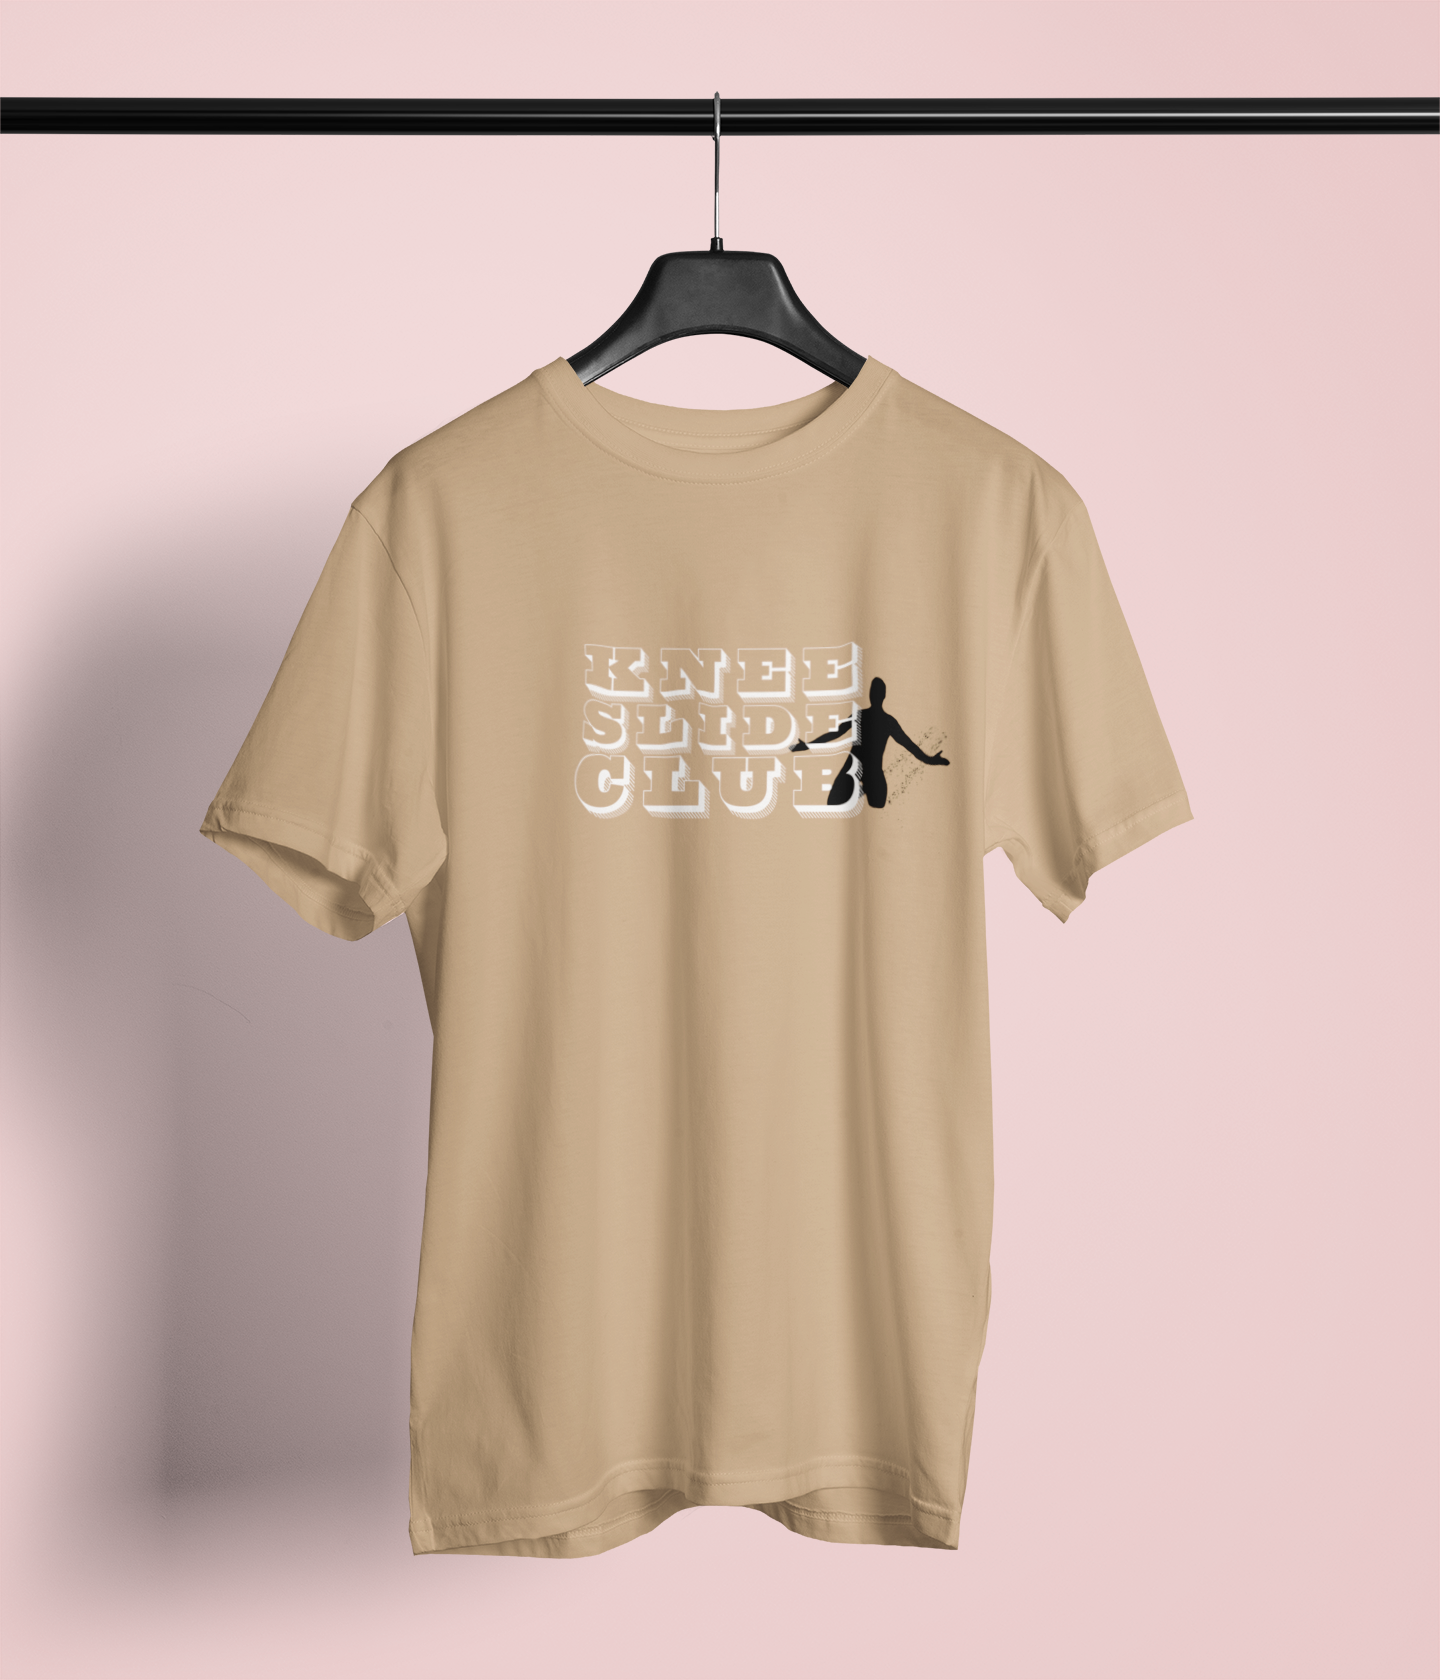 Kneeslide Club Silhouette T-shirt